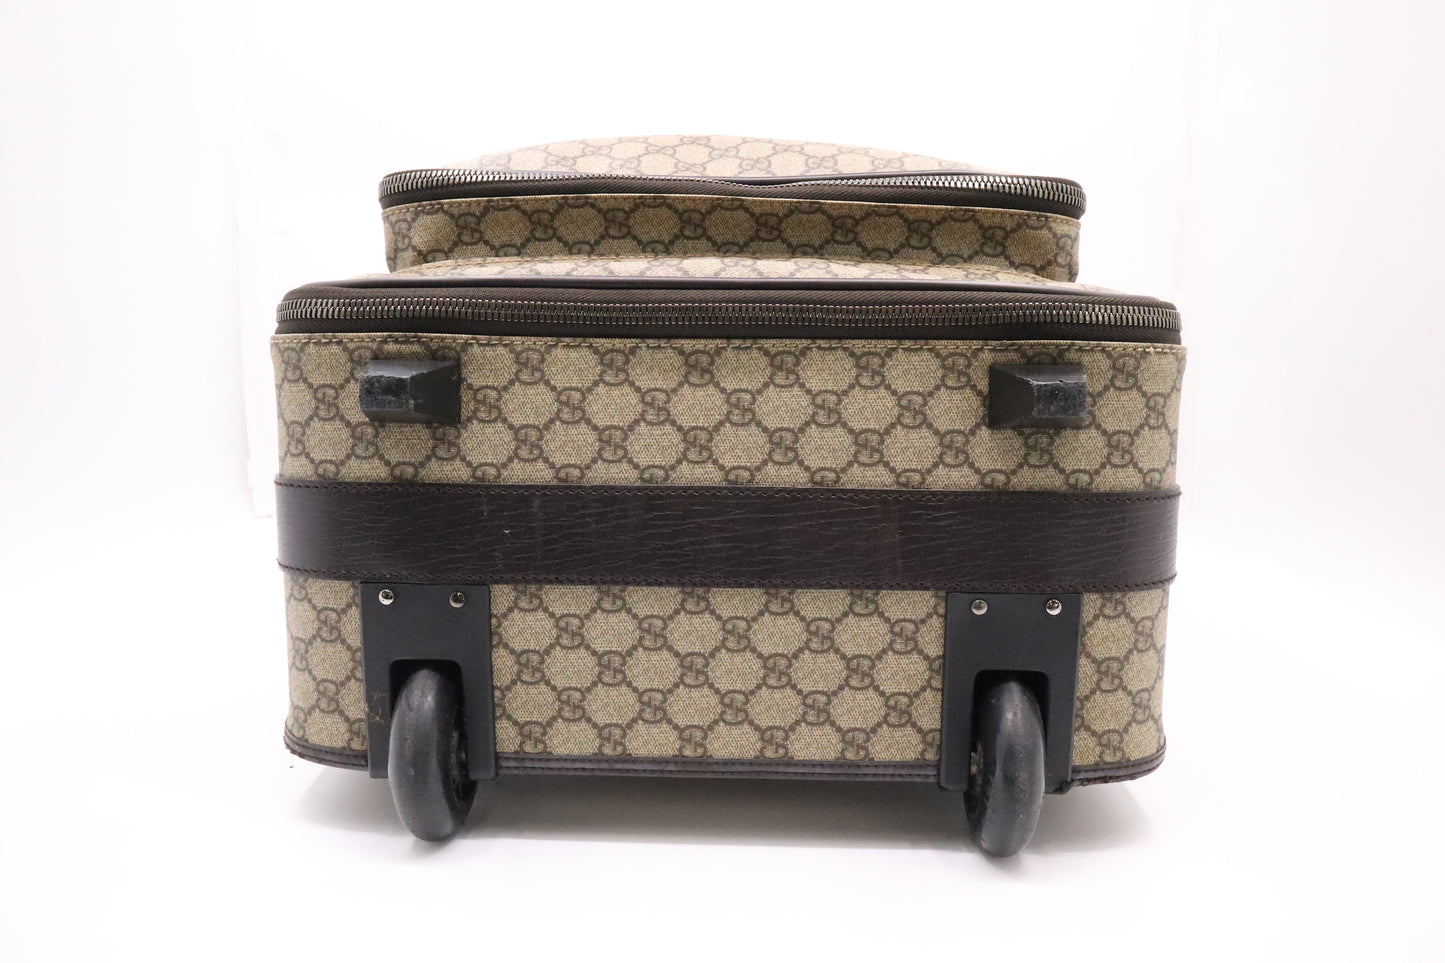 Gucci Suitcase in GG Supreme Canvas